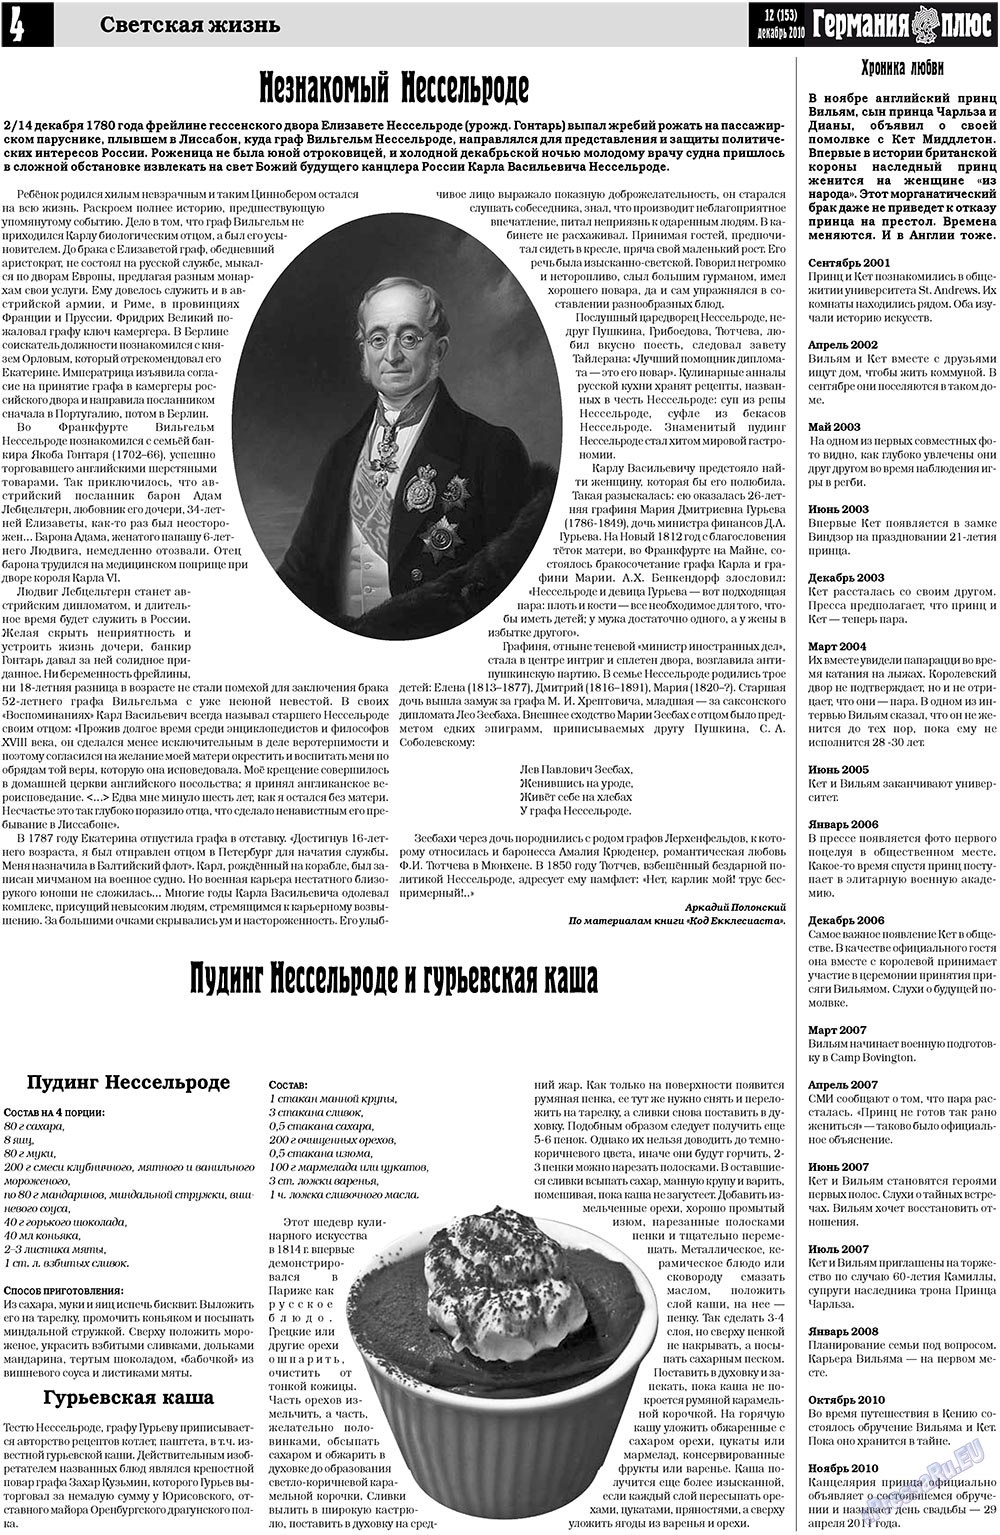 Германия плюс, газета. 2010 №12 стр.4